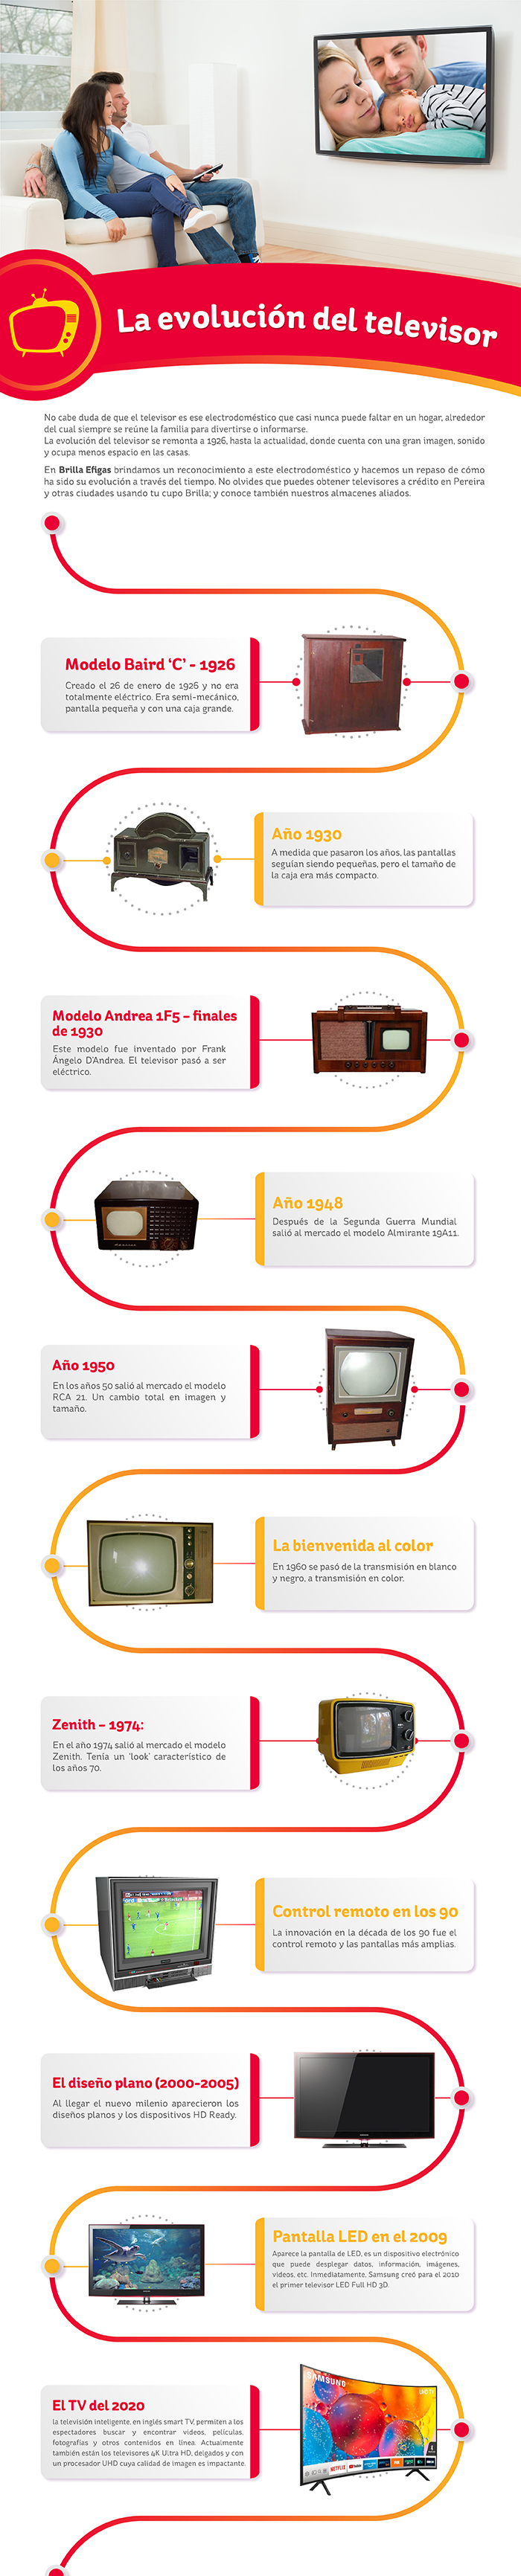 Evolución del televisor, historia del televisor, cambios de la televisión